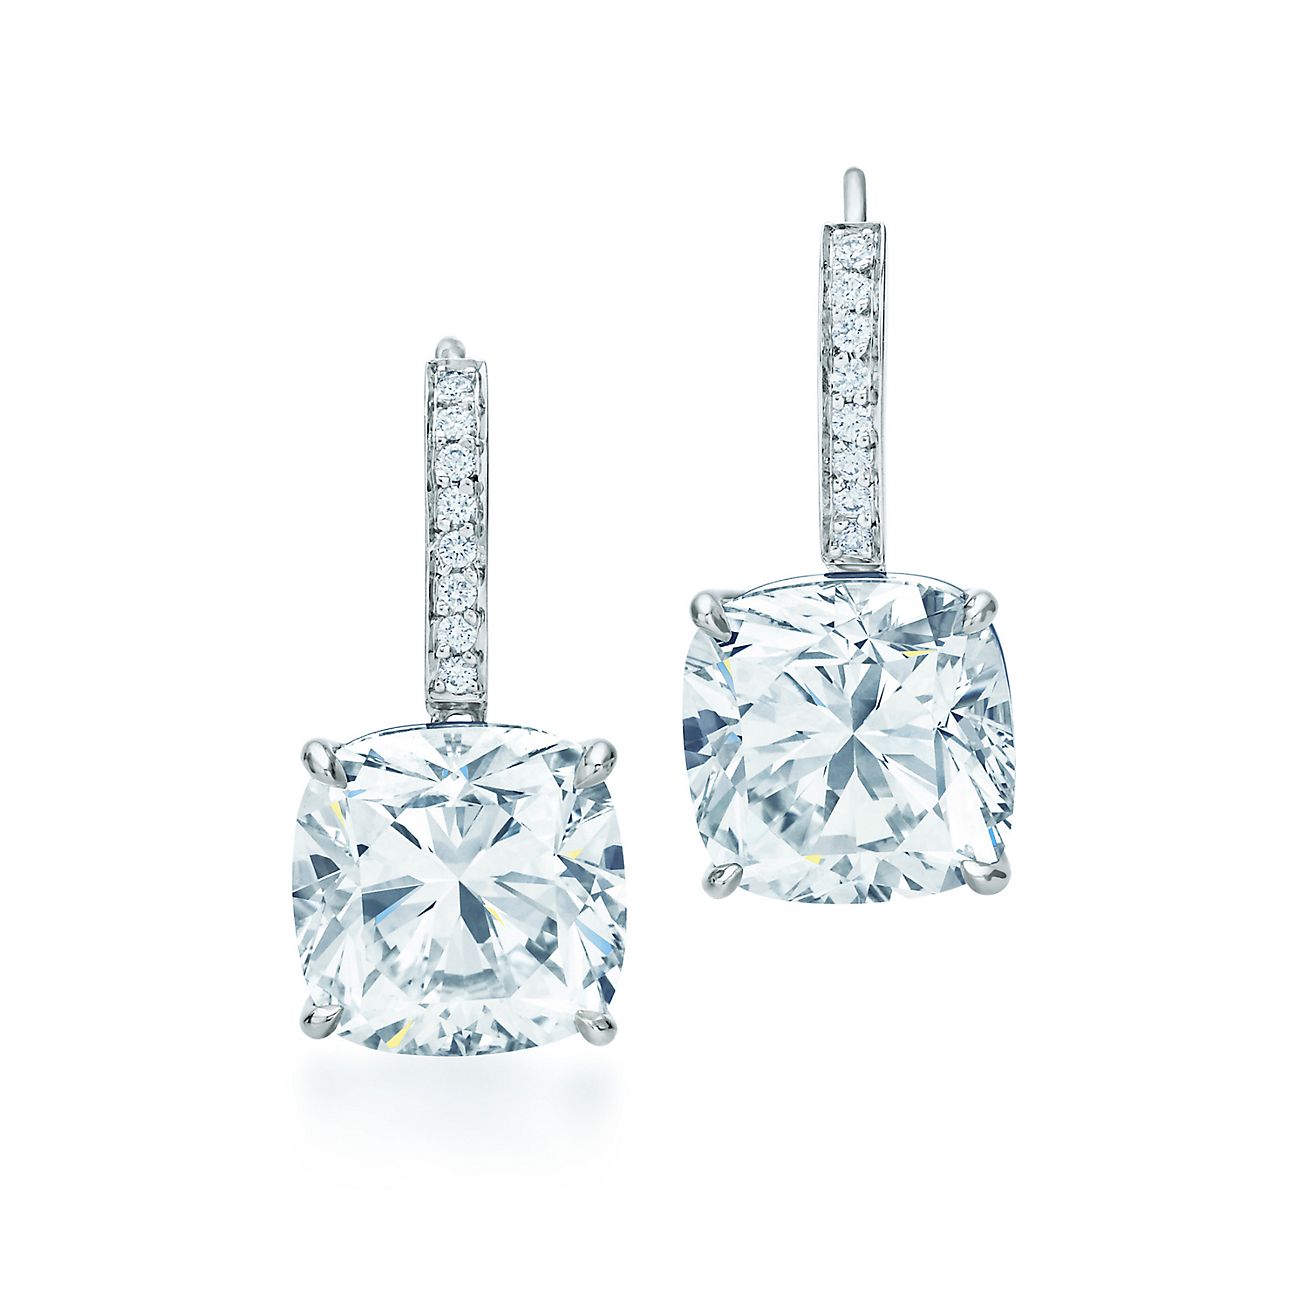 Tiffany Novo® diamond earrings in 